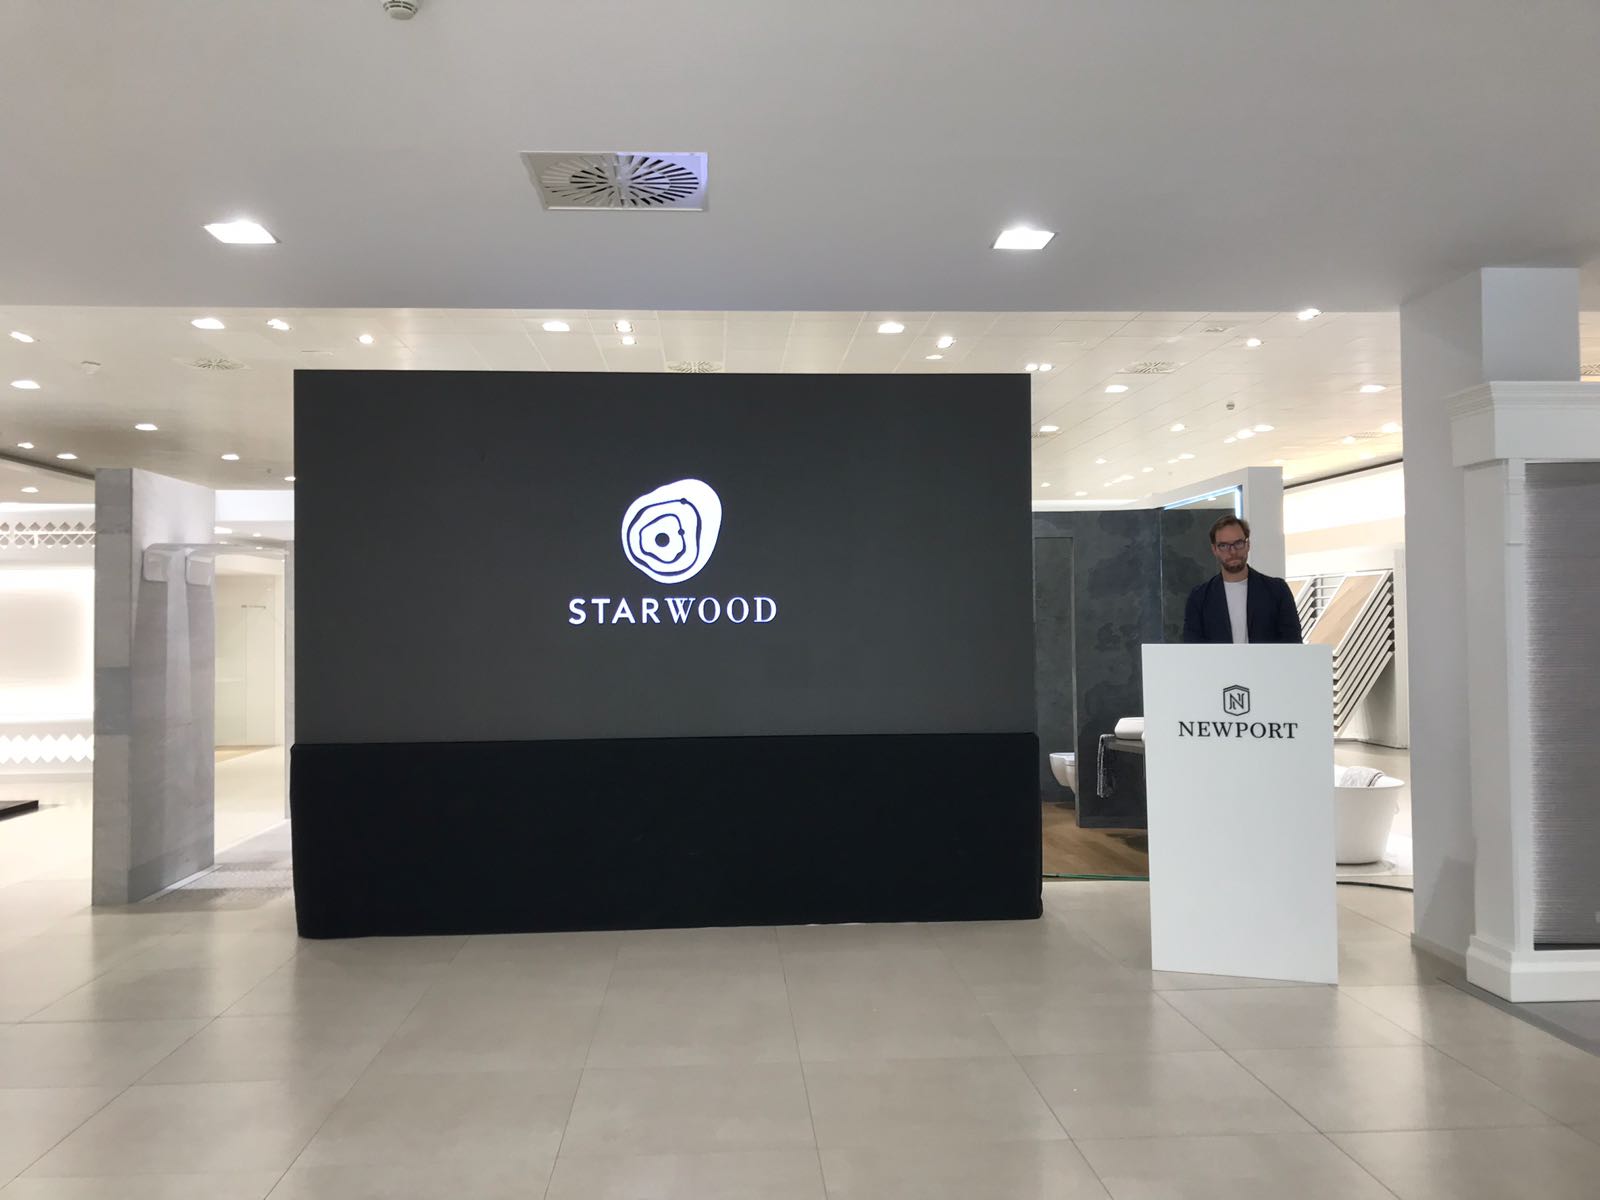 Una de las showrooms que presentamos: Starwood